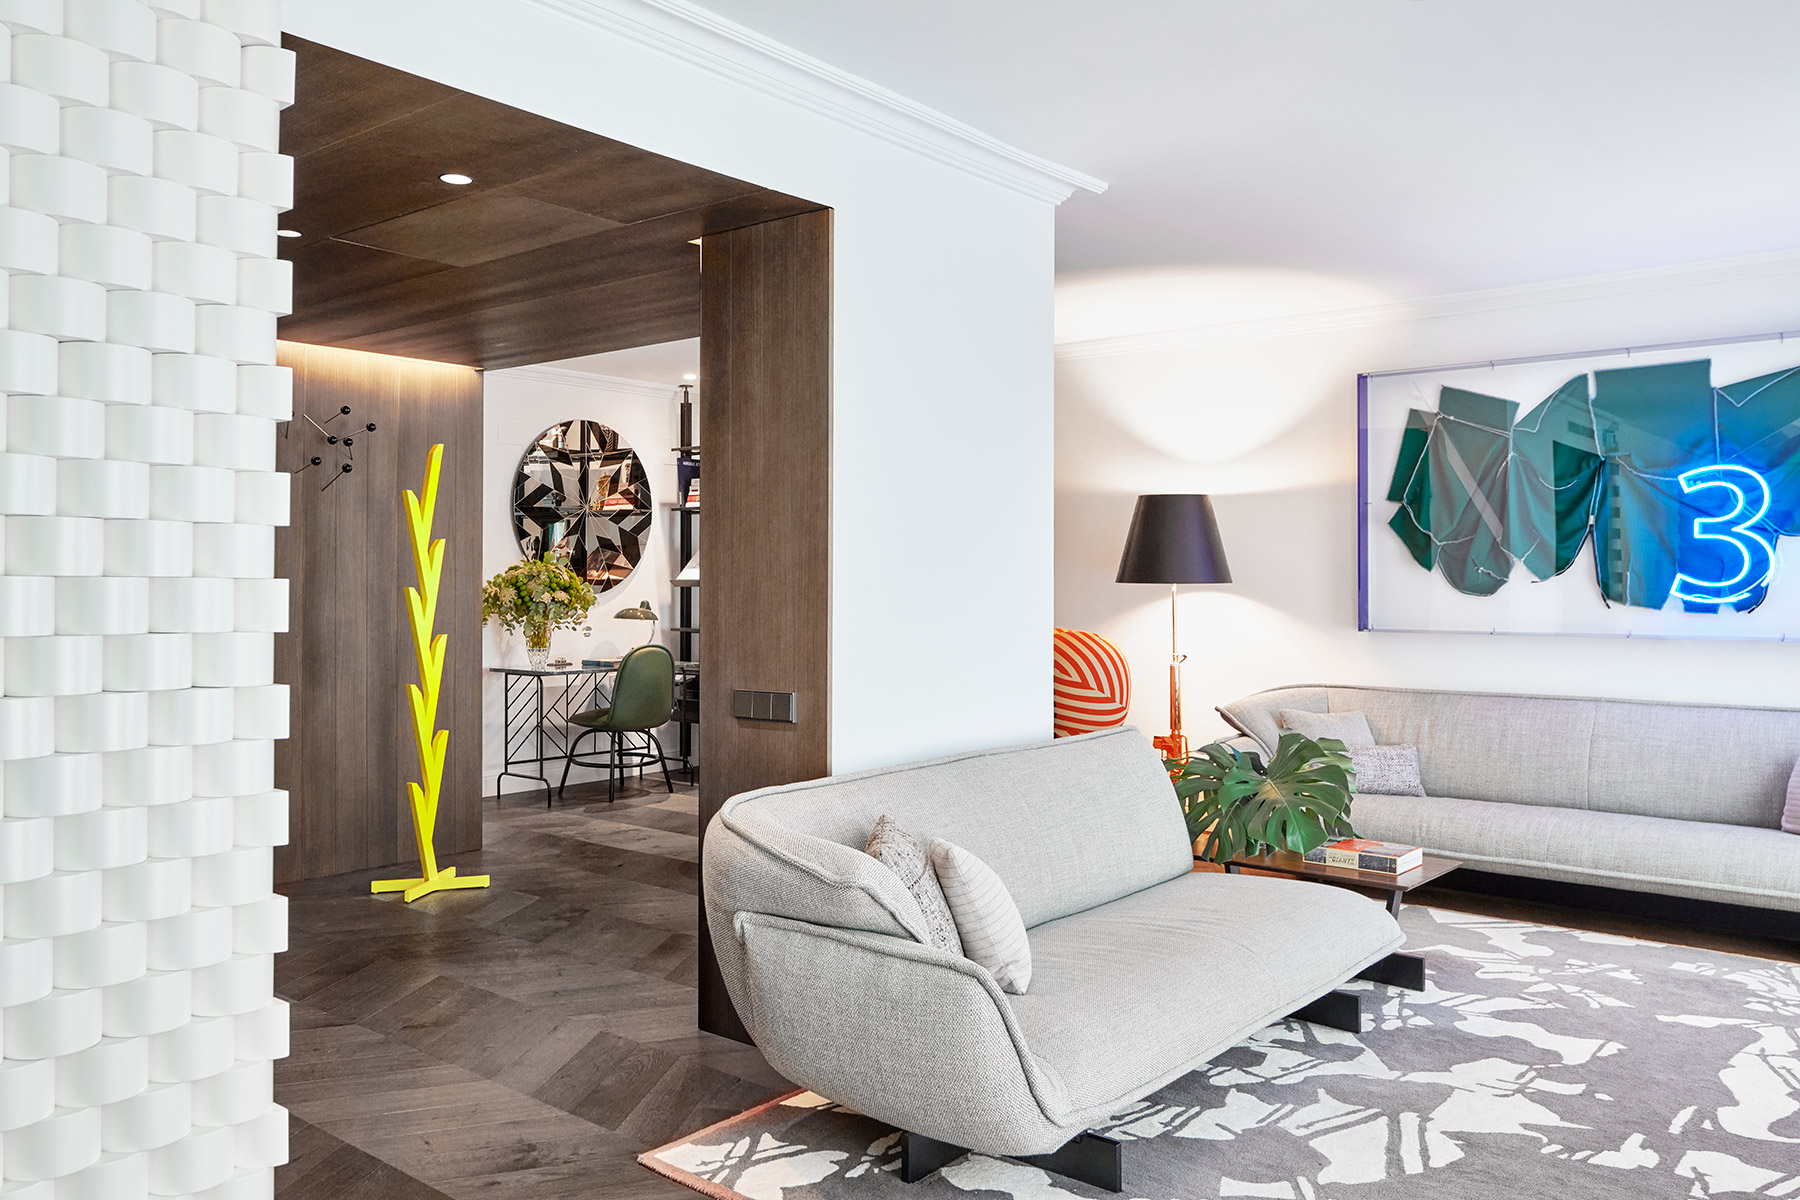 La casa del diseñador José Manuel Ferrero, director de estudi{H}ac, refleja en cada detalle su pasión por el mundo de la sastrería, los tejidos y las texturas